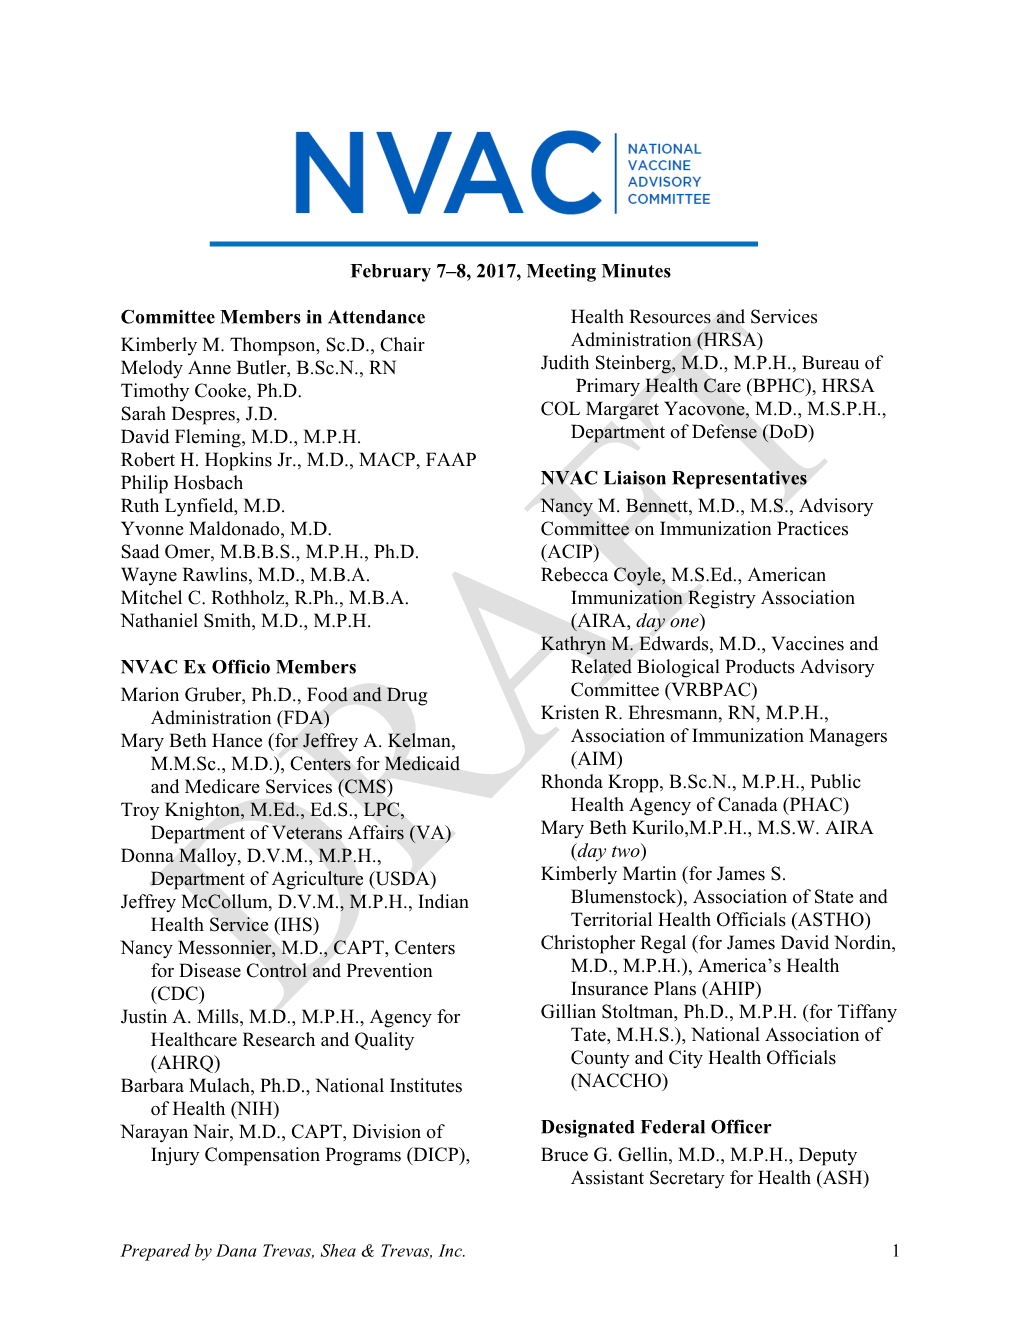 Feb 2017 NVAC Meeting Minutes